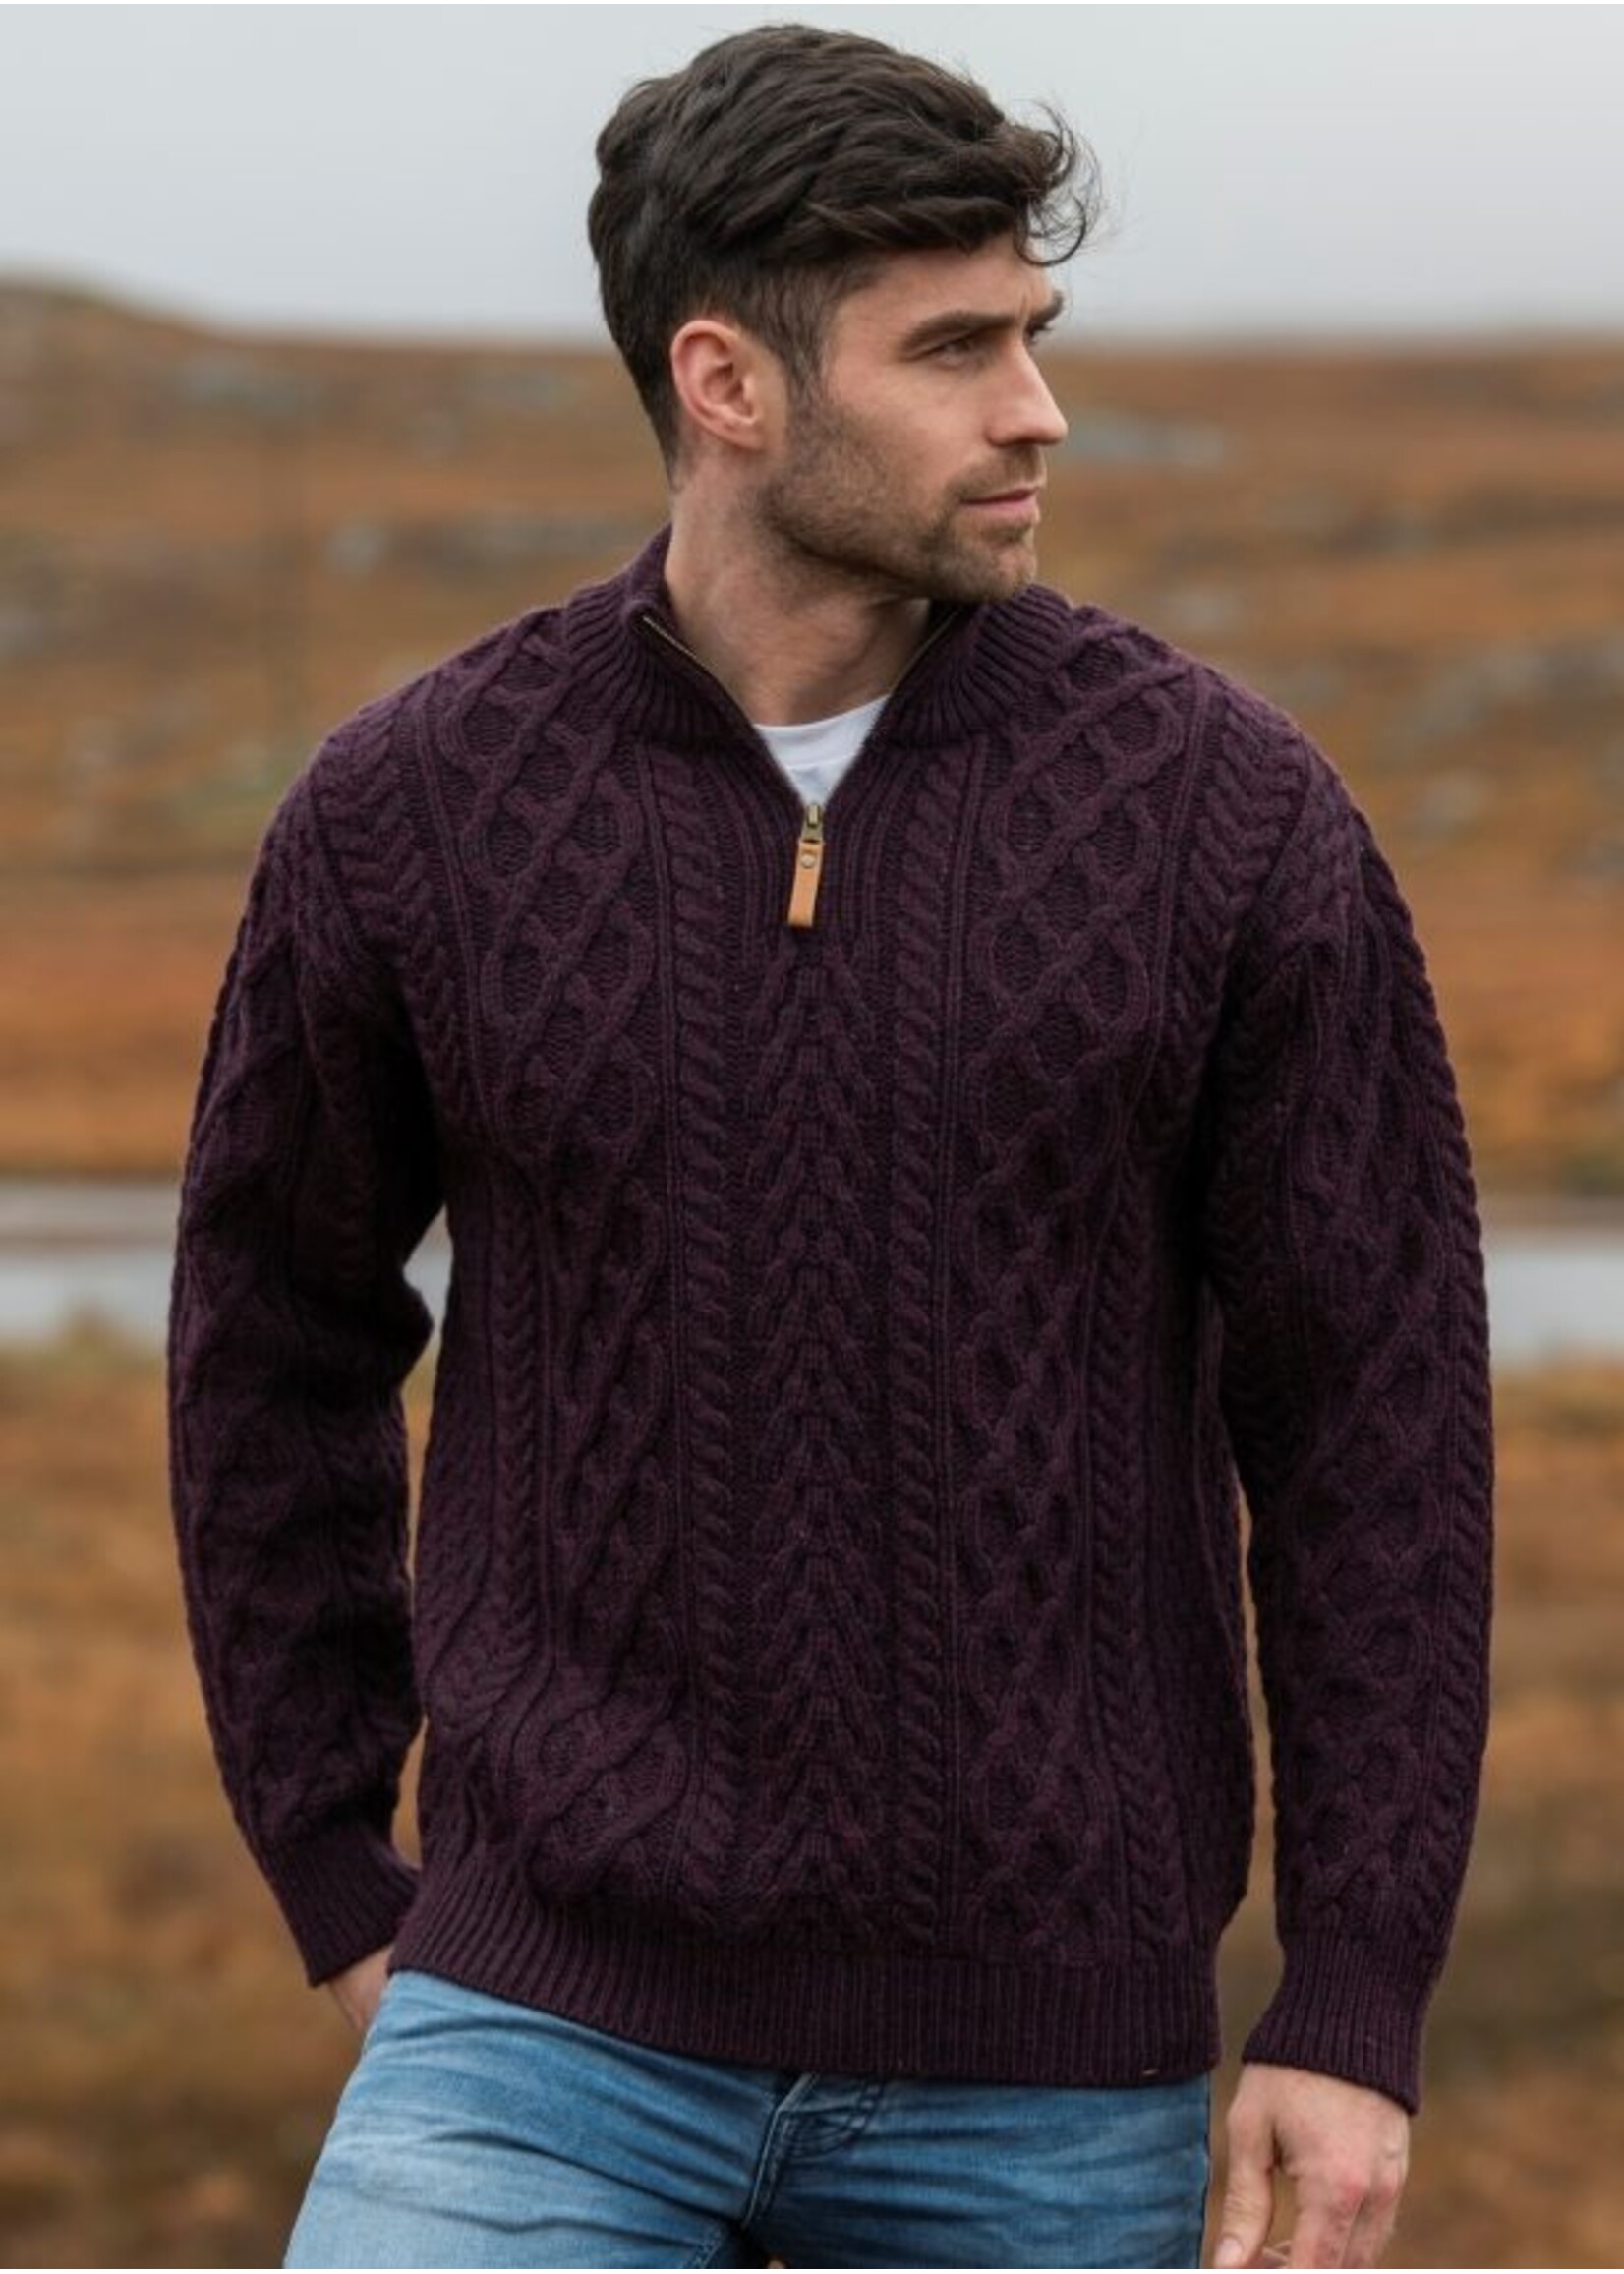 West End Knitwear Irish Sweater -M- Donegal 1/2 Zip